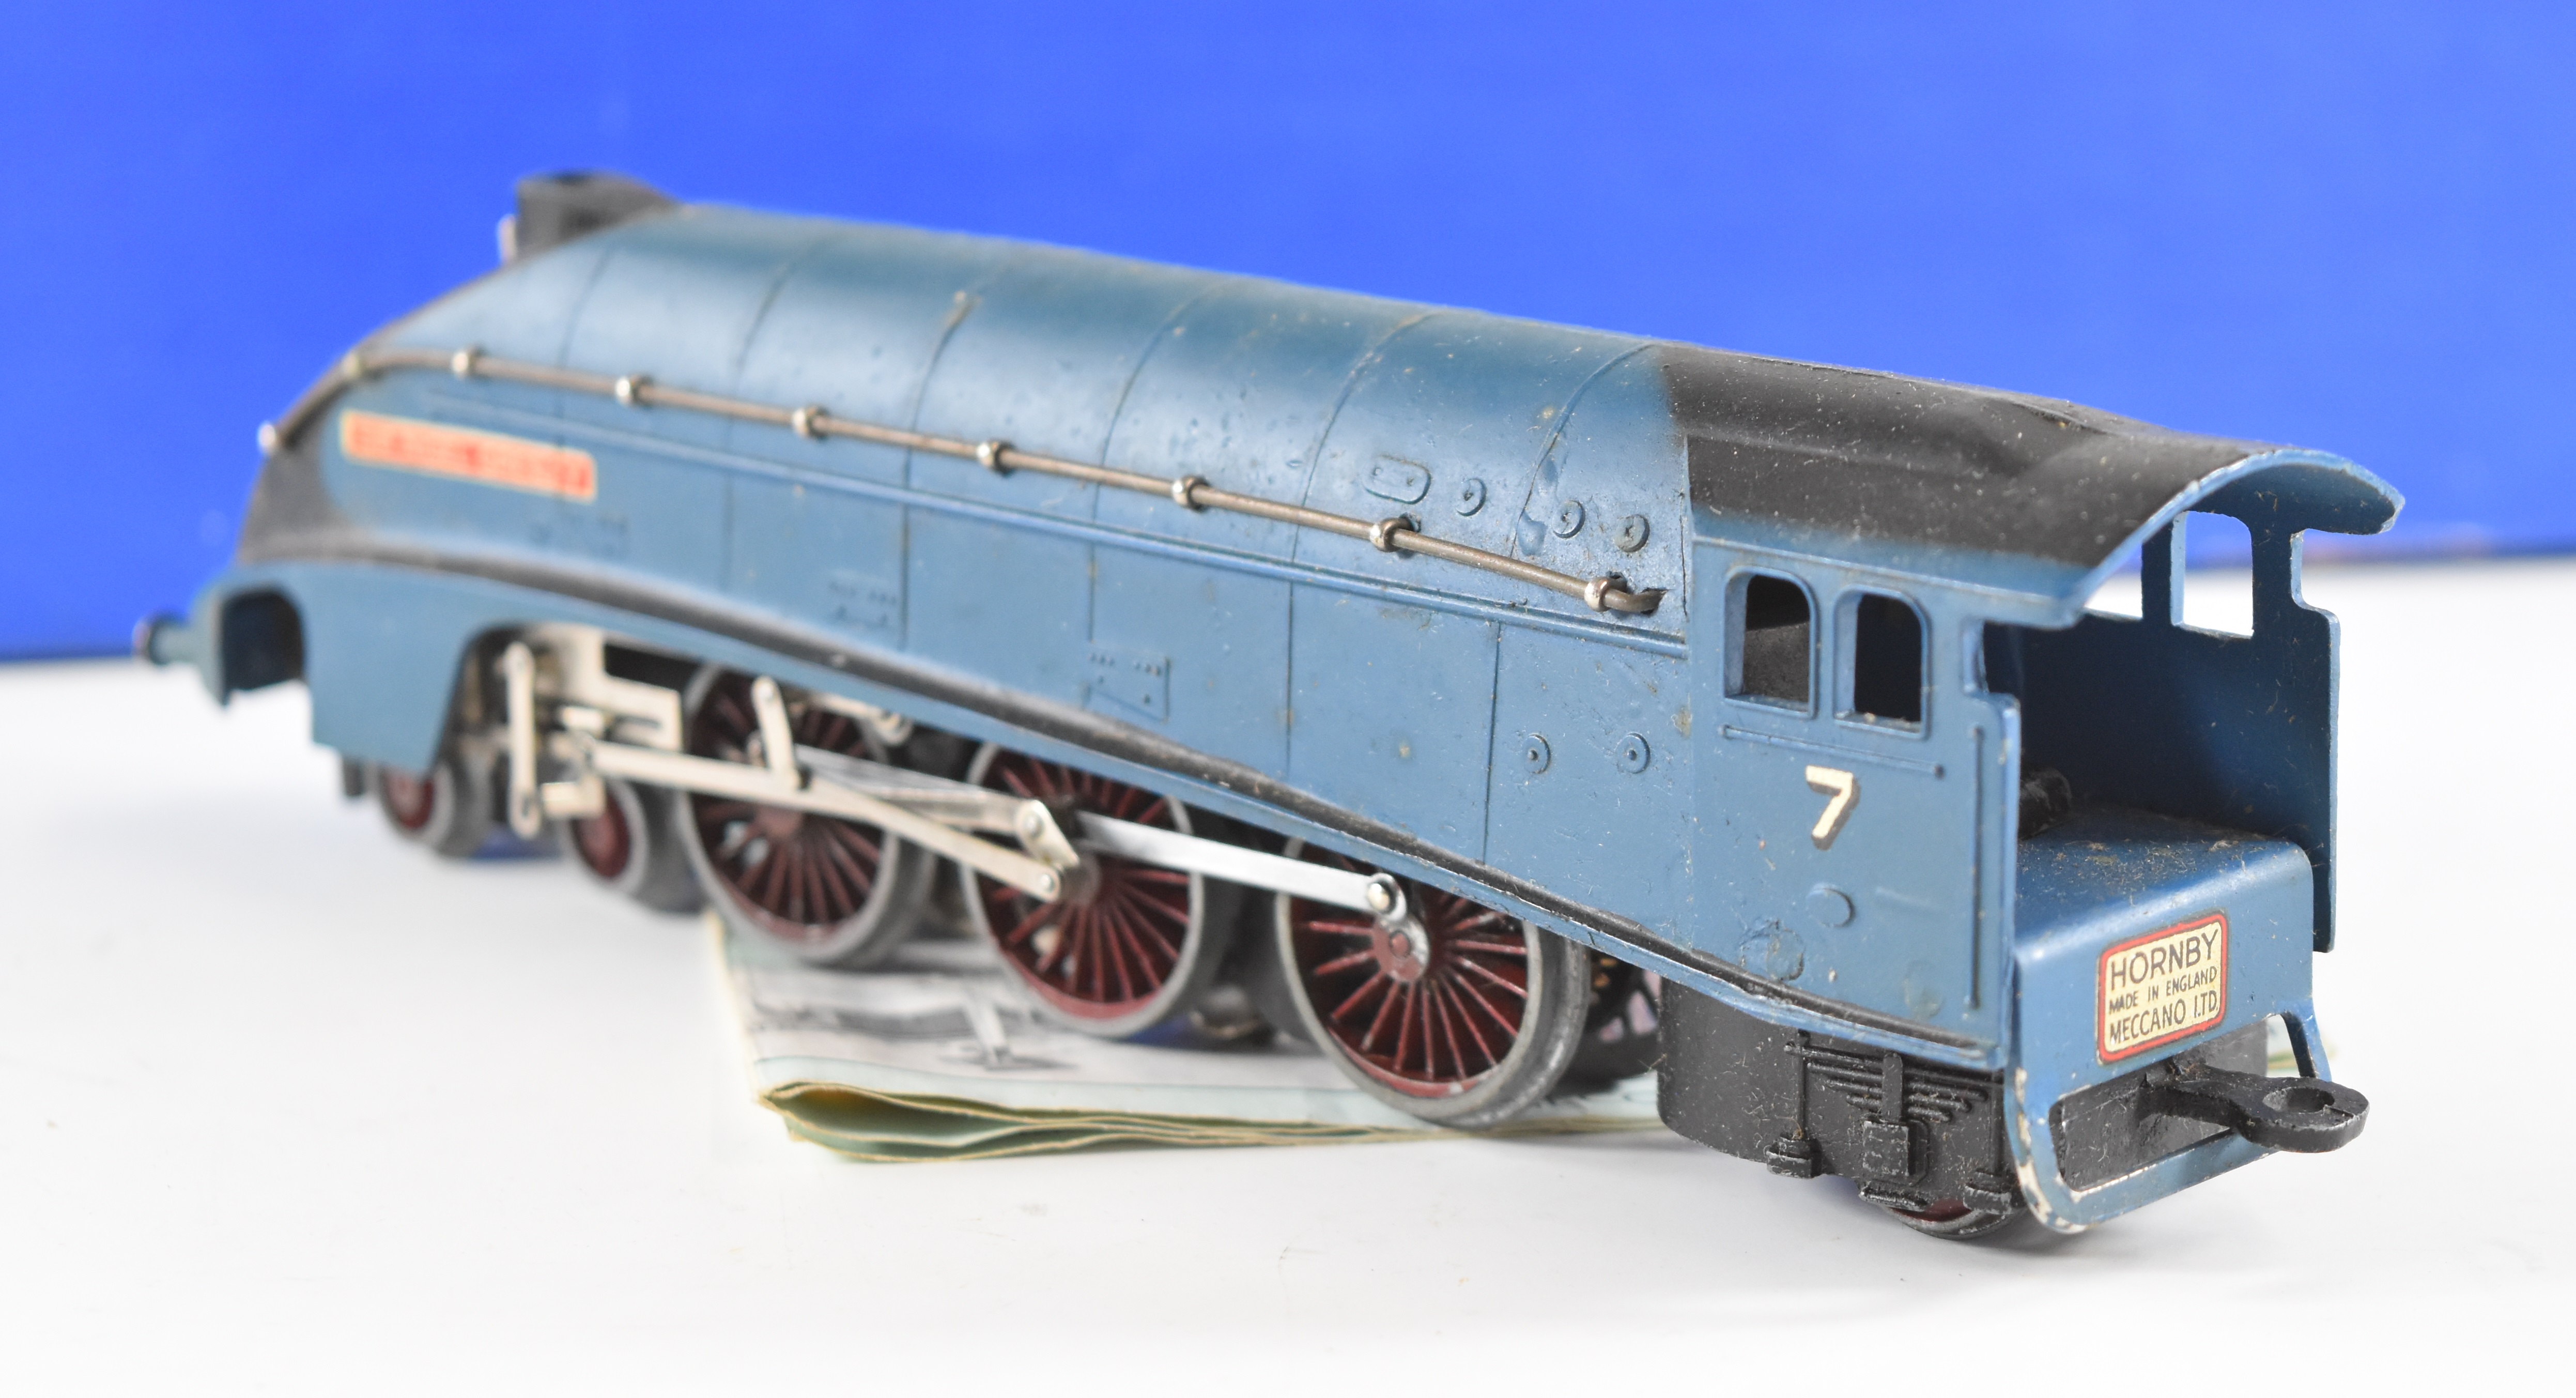 Hornby Dublo 00 gauge model railway EDPA1 passenger set with 'Sir Nigel Gresley' locomotive, in - Image 9 of 11